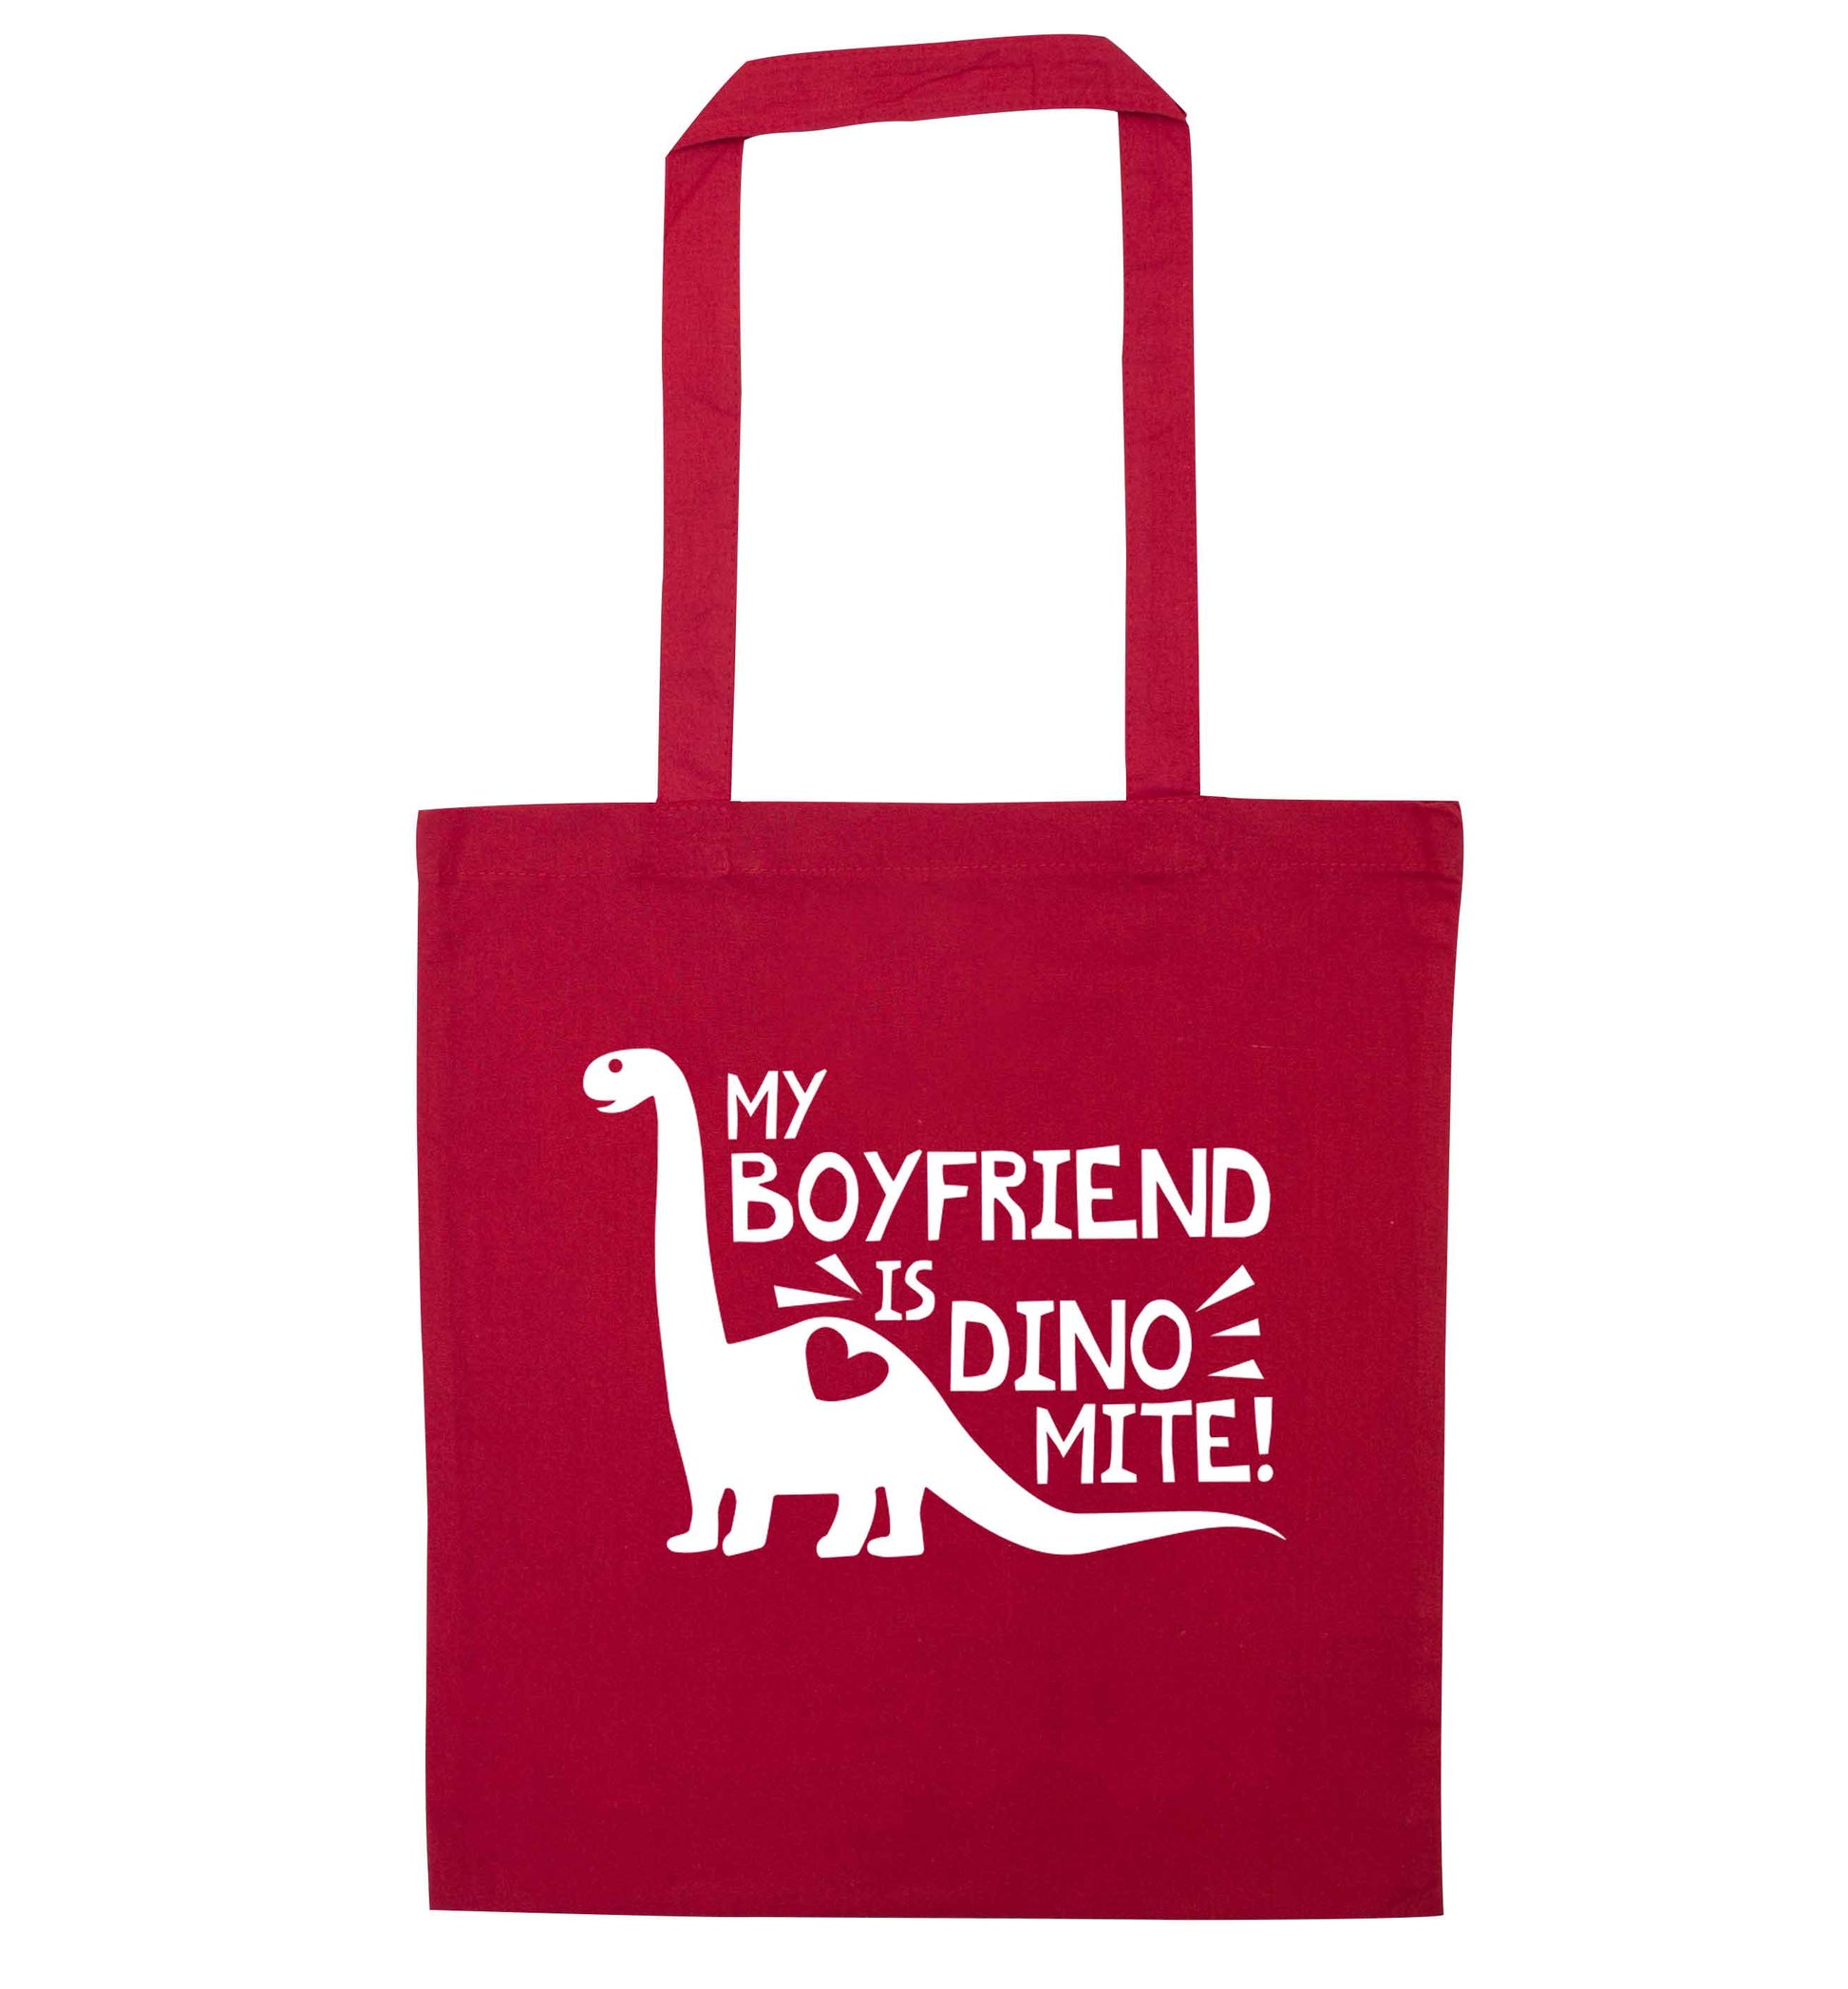 My boyfriend is dinomite! red tote bag